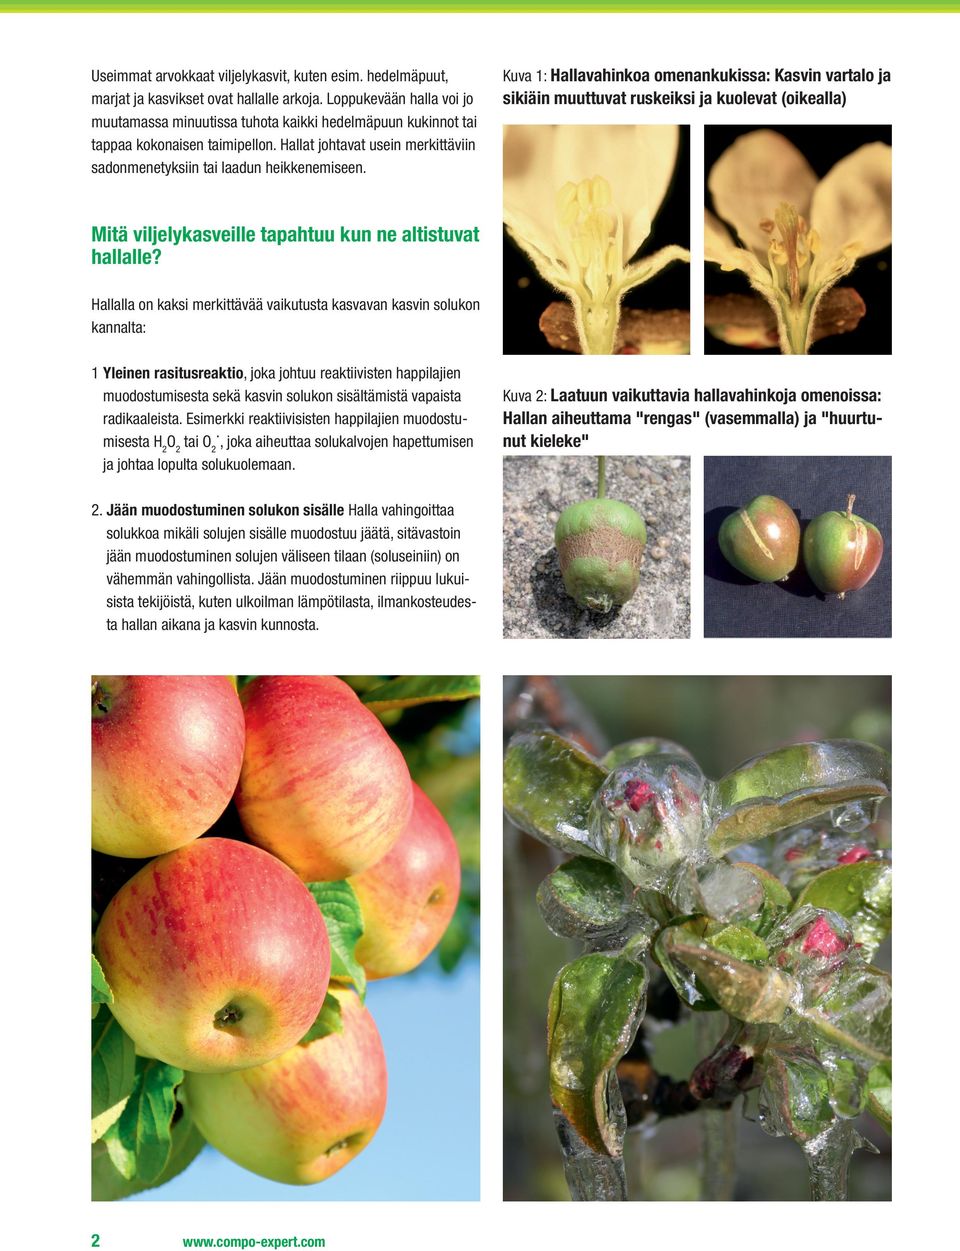 Kuva 1: Hallavahinkoa omenankukissa: Kasvin vartalo ja sikiäin muuttuvat ruskeiksi ja kuolevat (oikealla) Mitä viljelykasveille tapahtuu kun ne altistuvat hallalle?